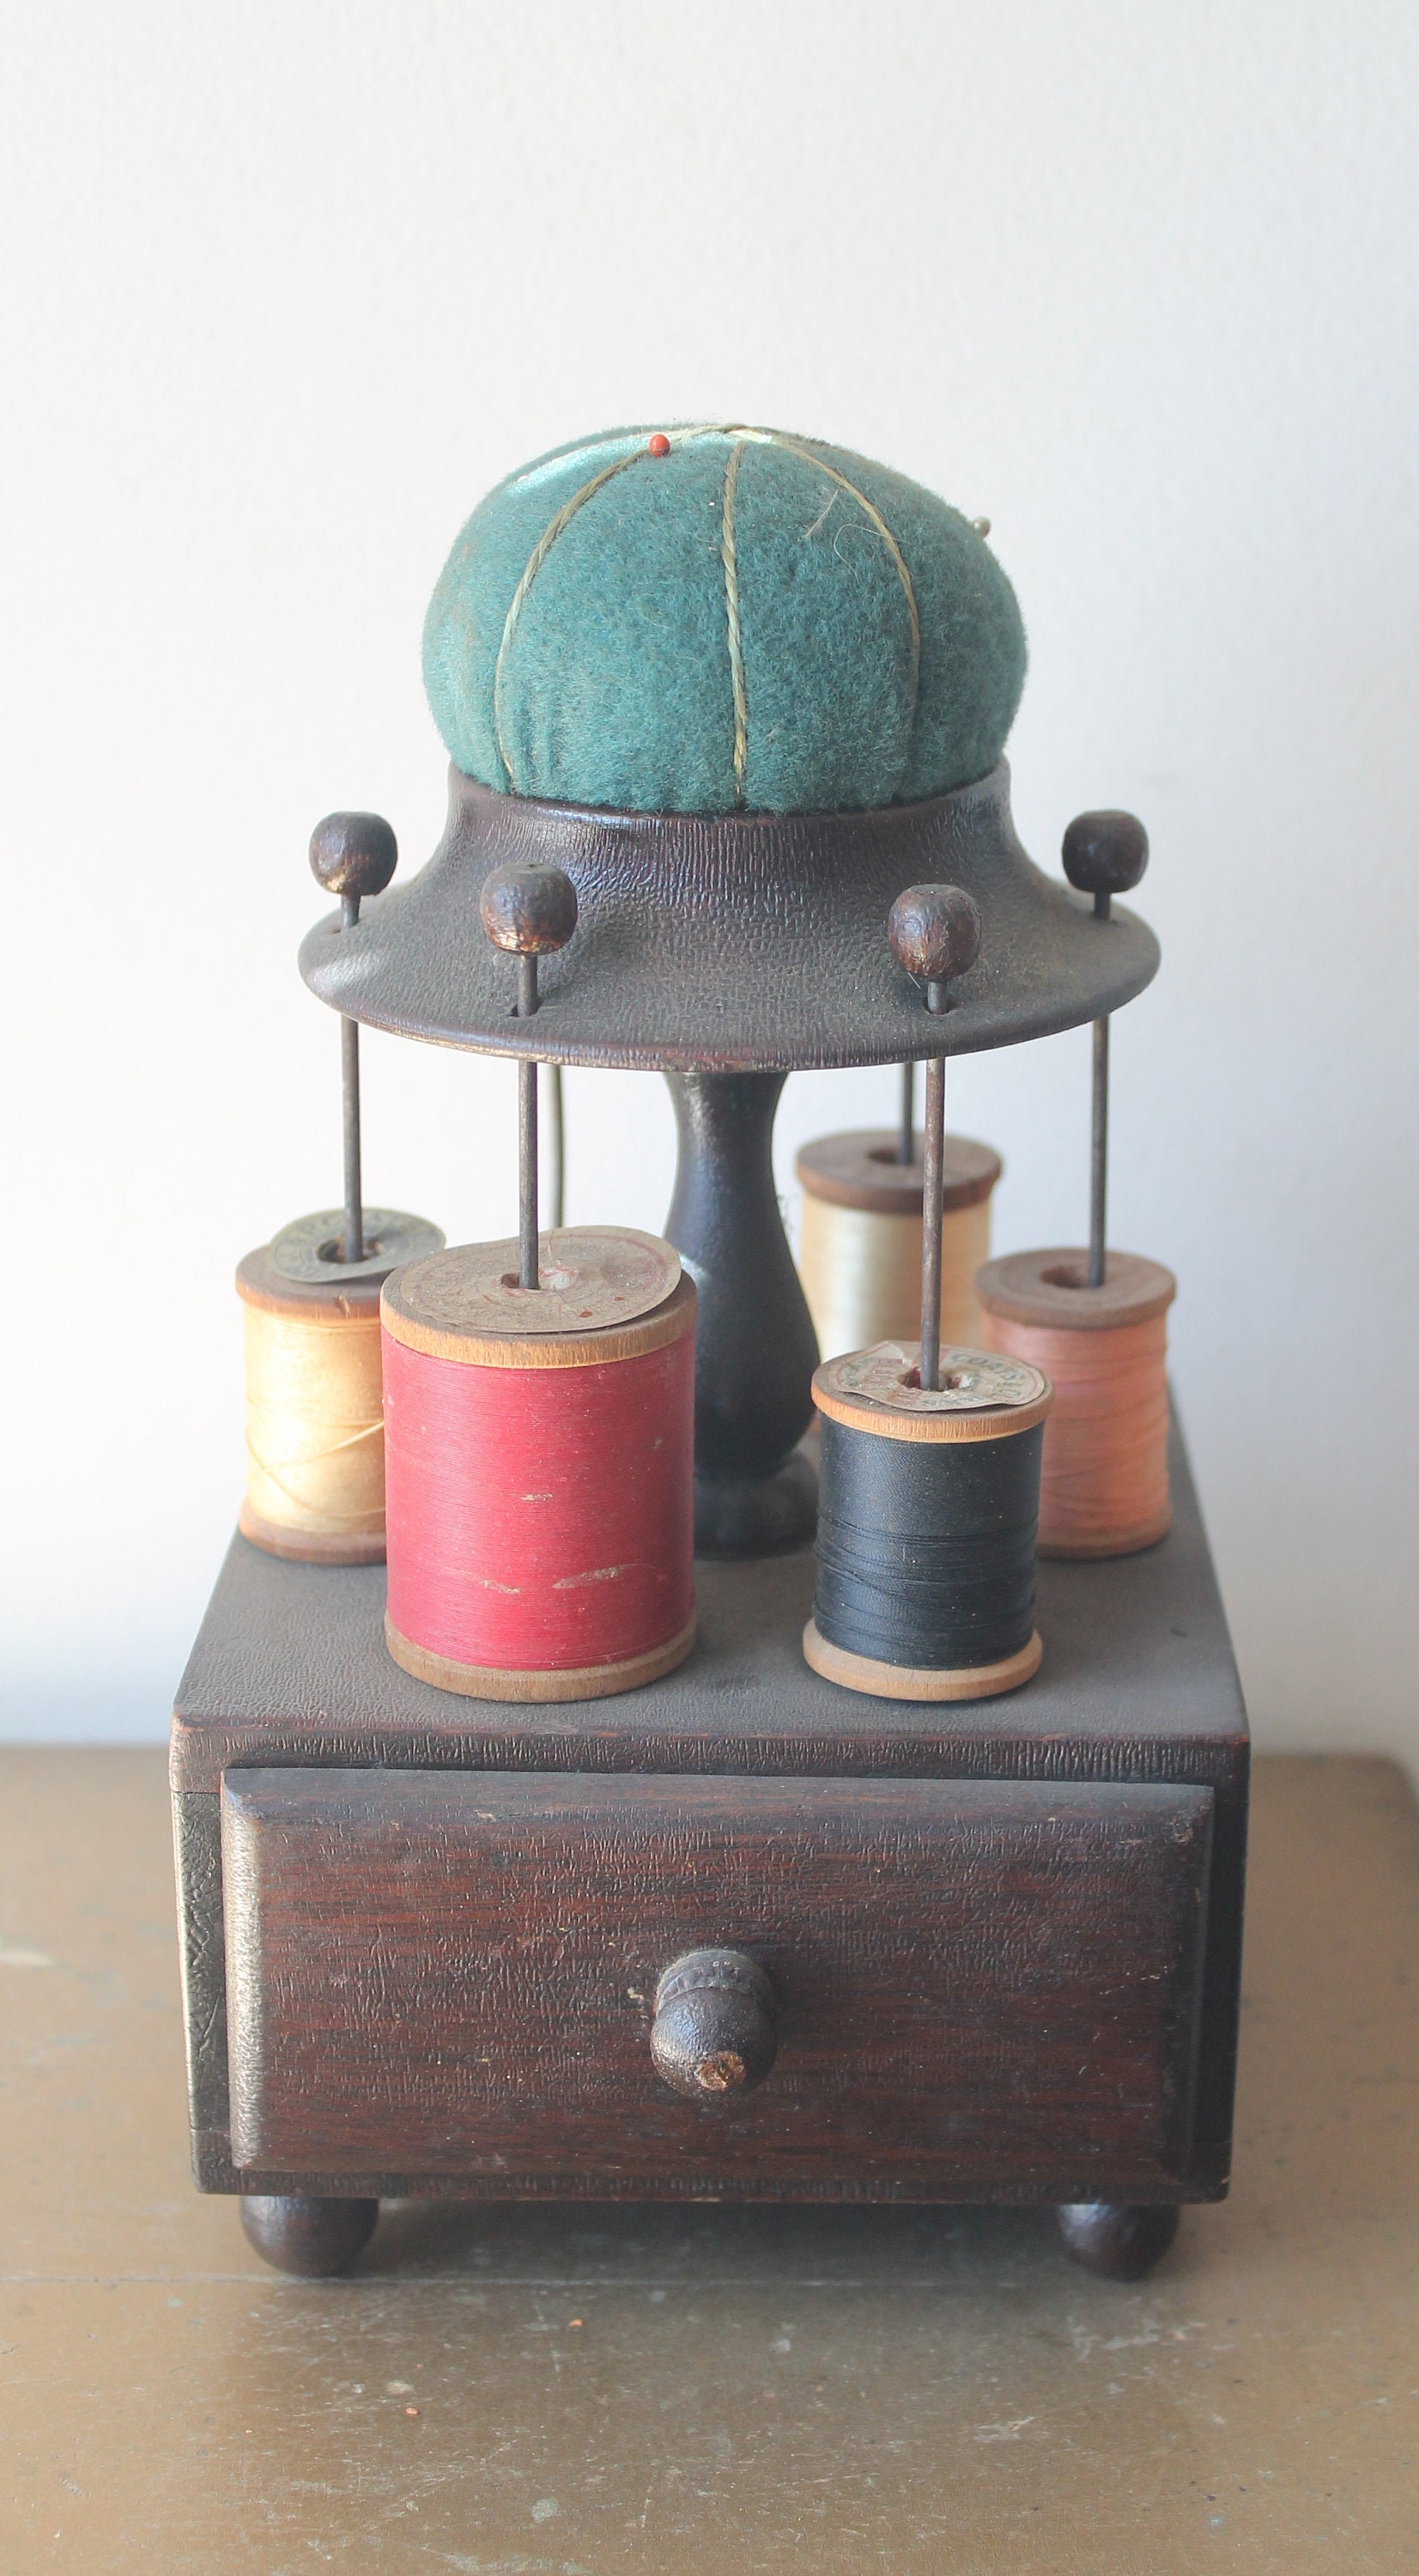 Antique Octagonal Thread Spool Holder / Thread Box + Pincushion